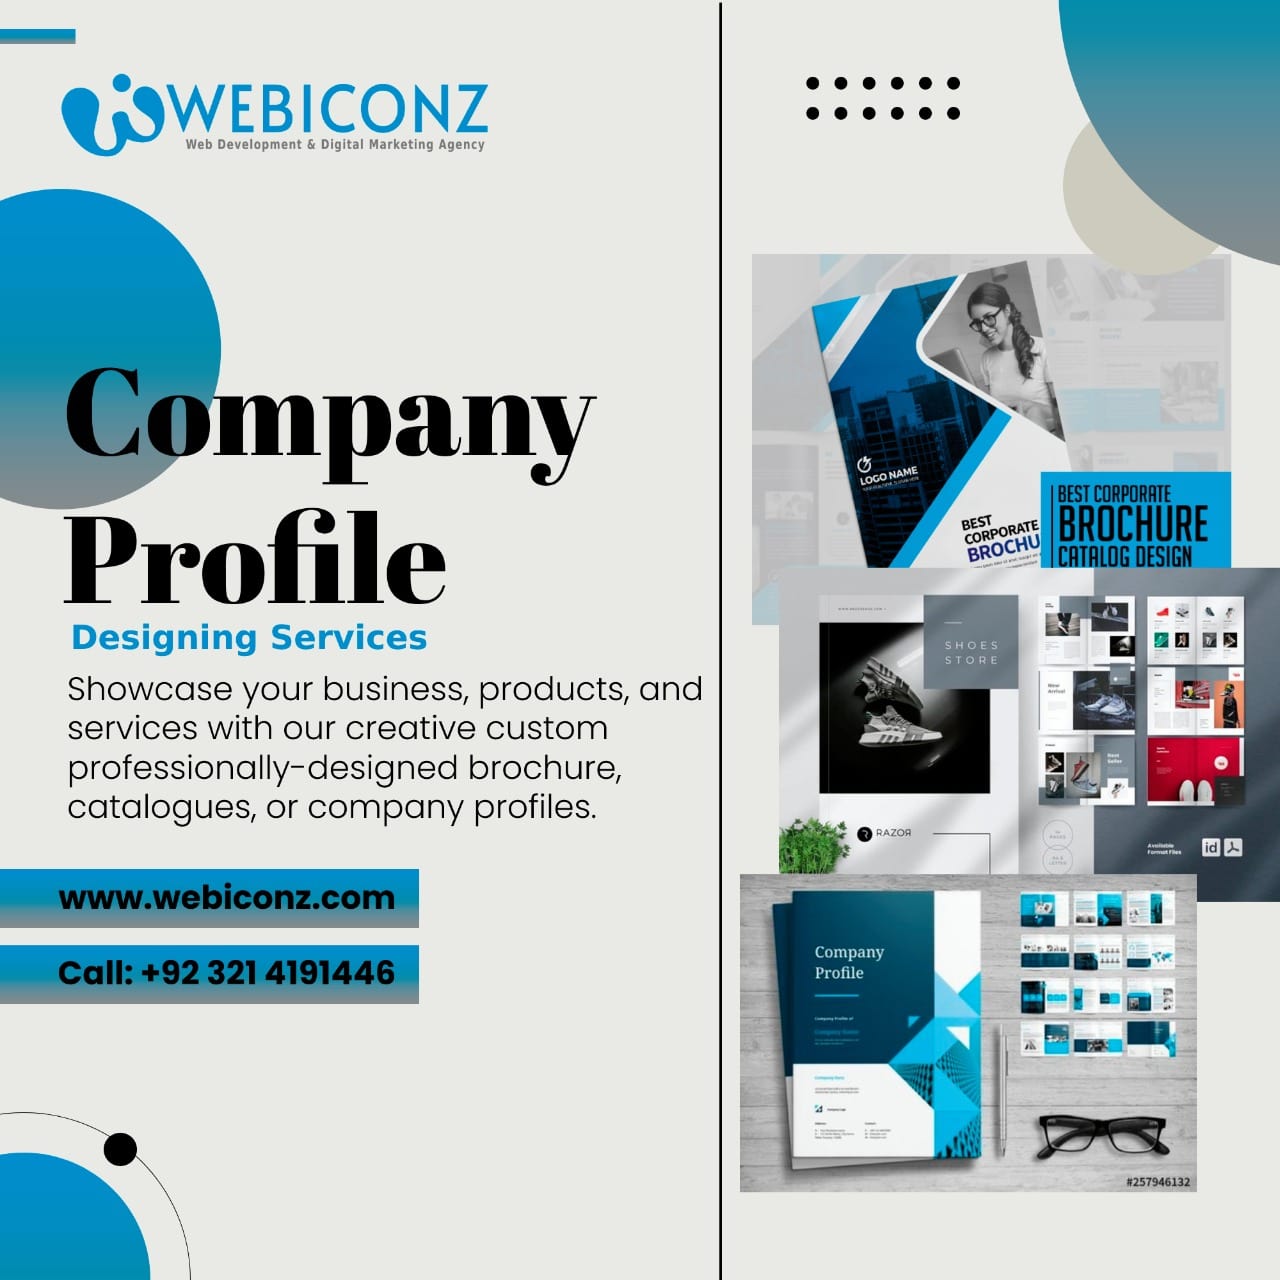 company profile design services near me, Company profile design price, graphic design company dubai